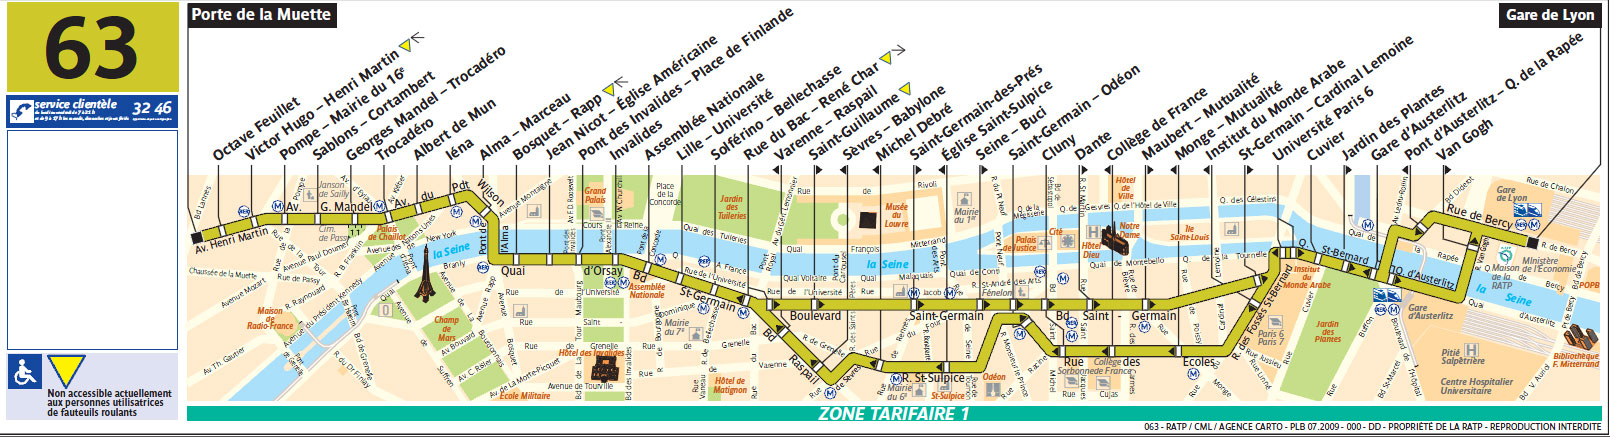 63 : direct MusÃ©e d'Orsay - Invalides - Tour Eiffel - Gare de Lyon